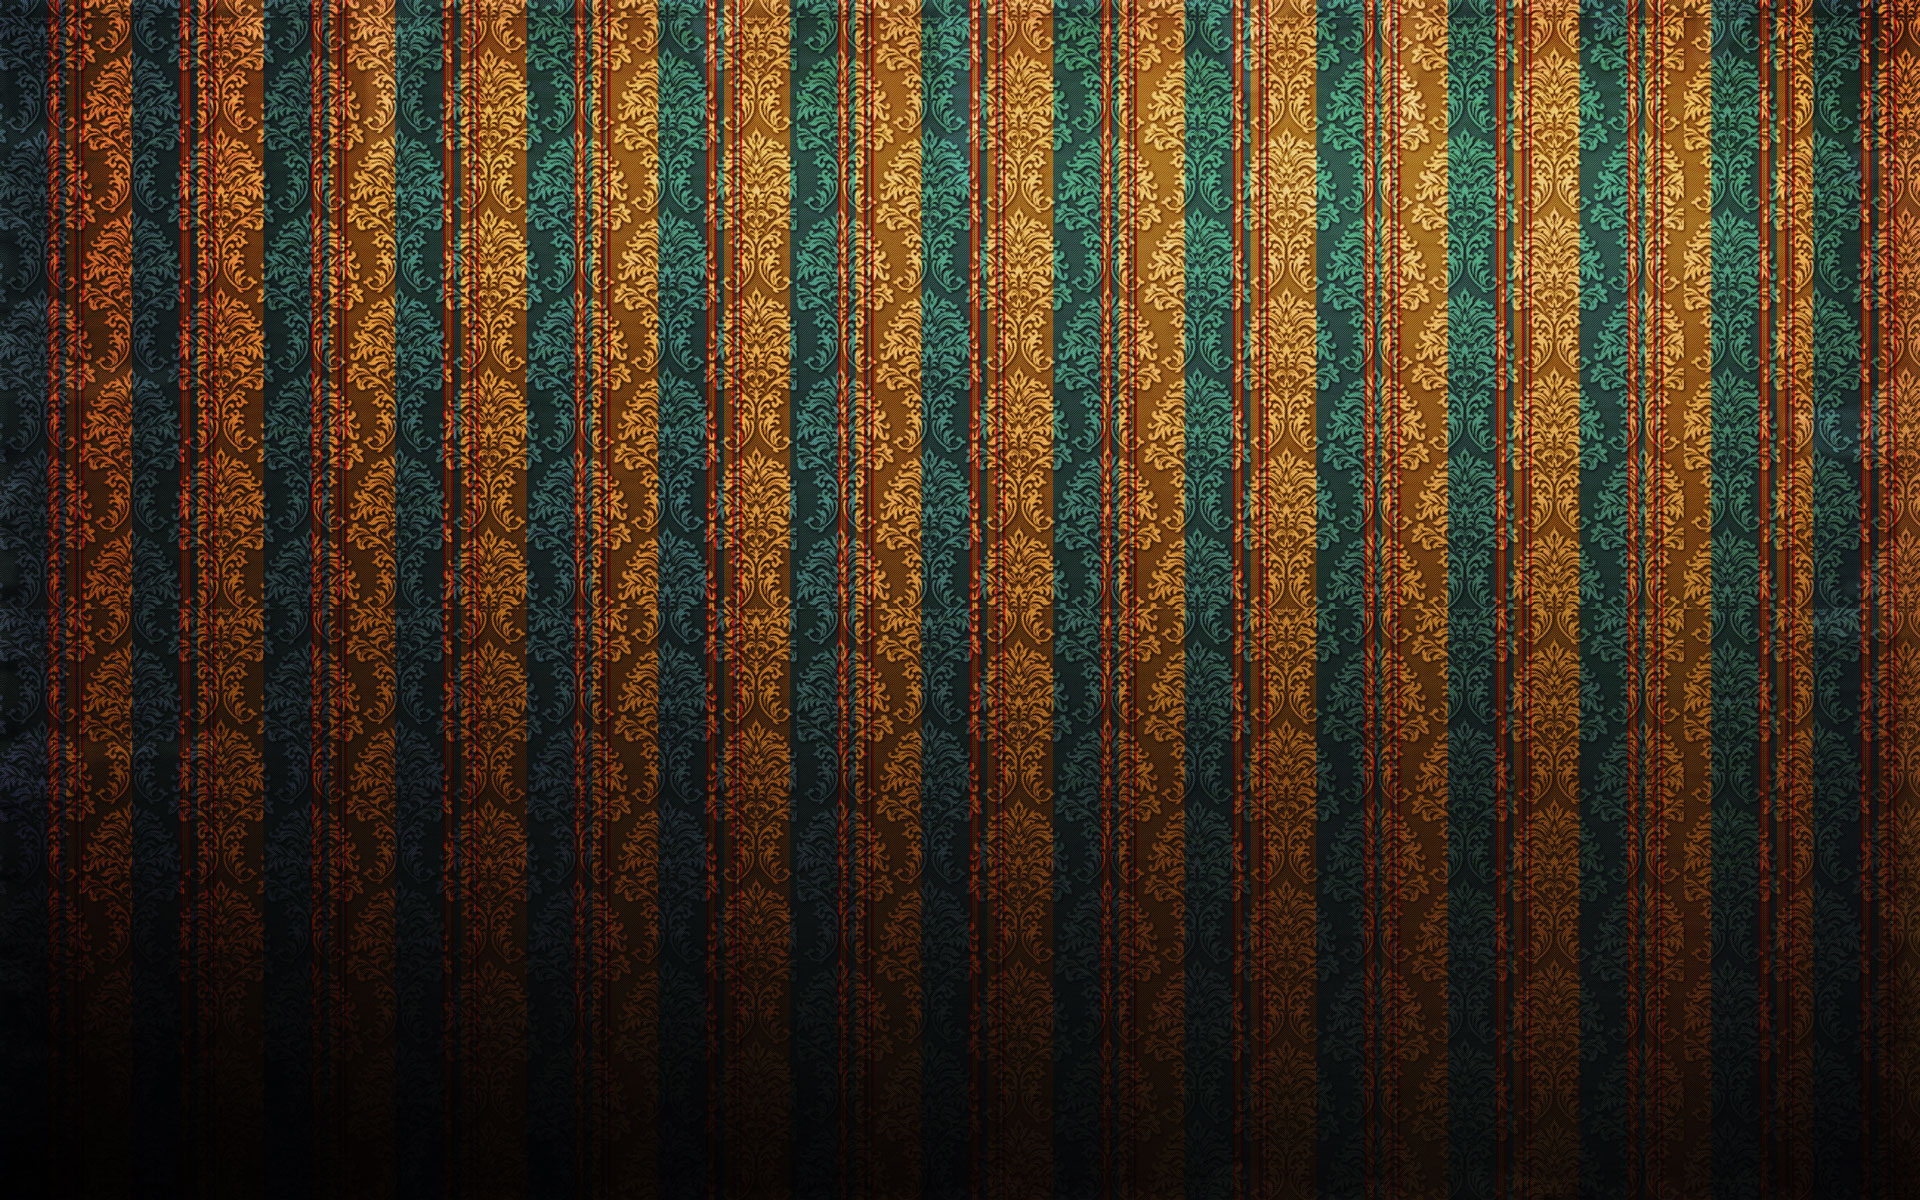 pattern - desktop wallpaper